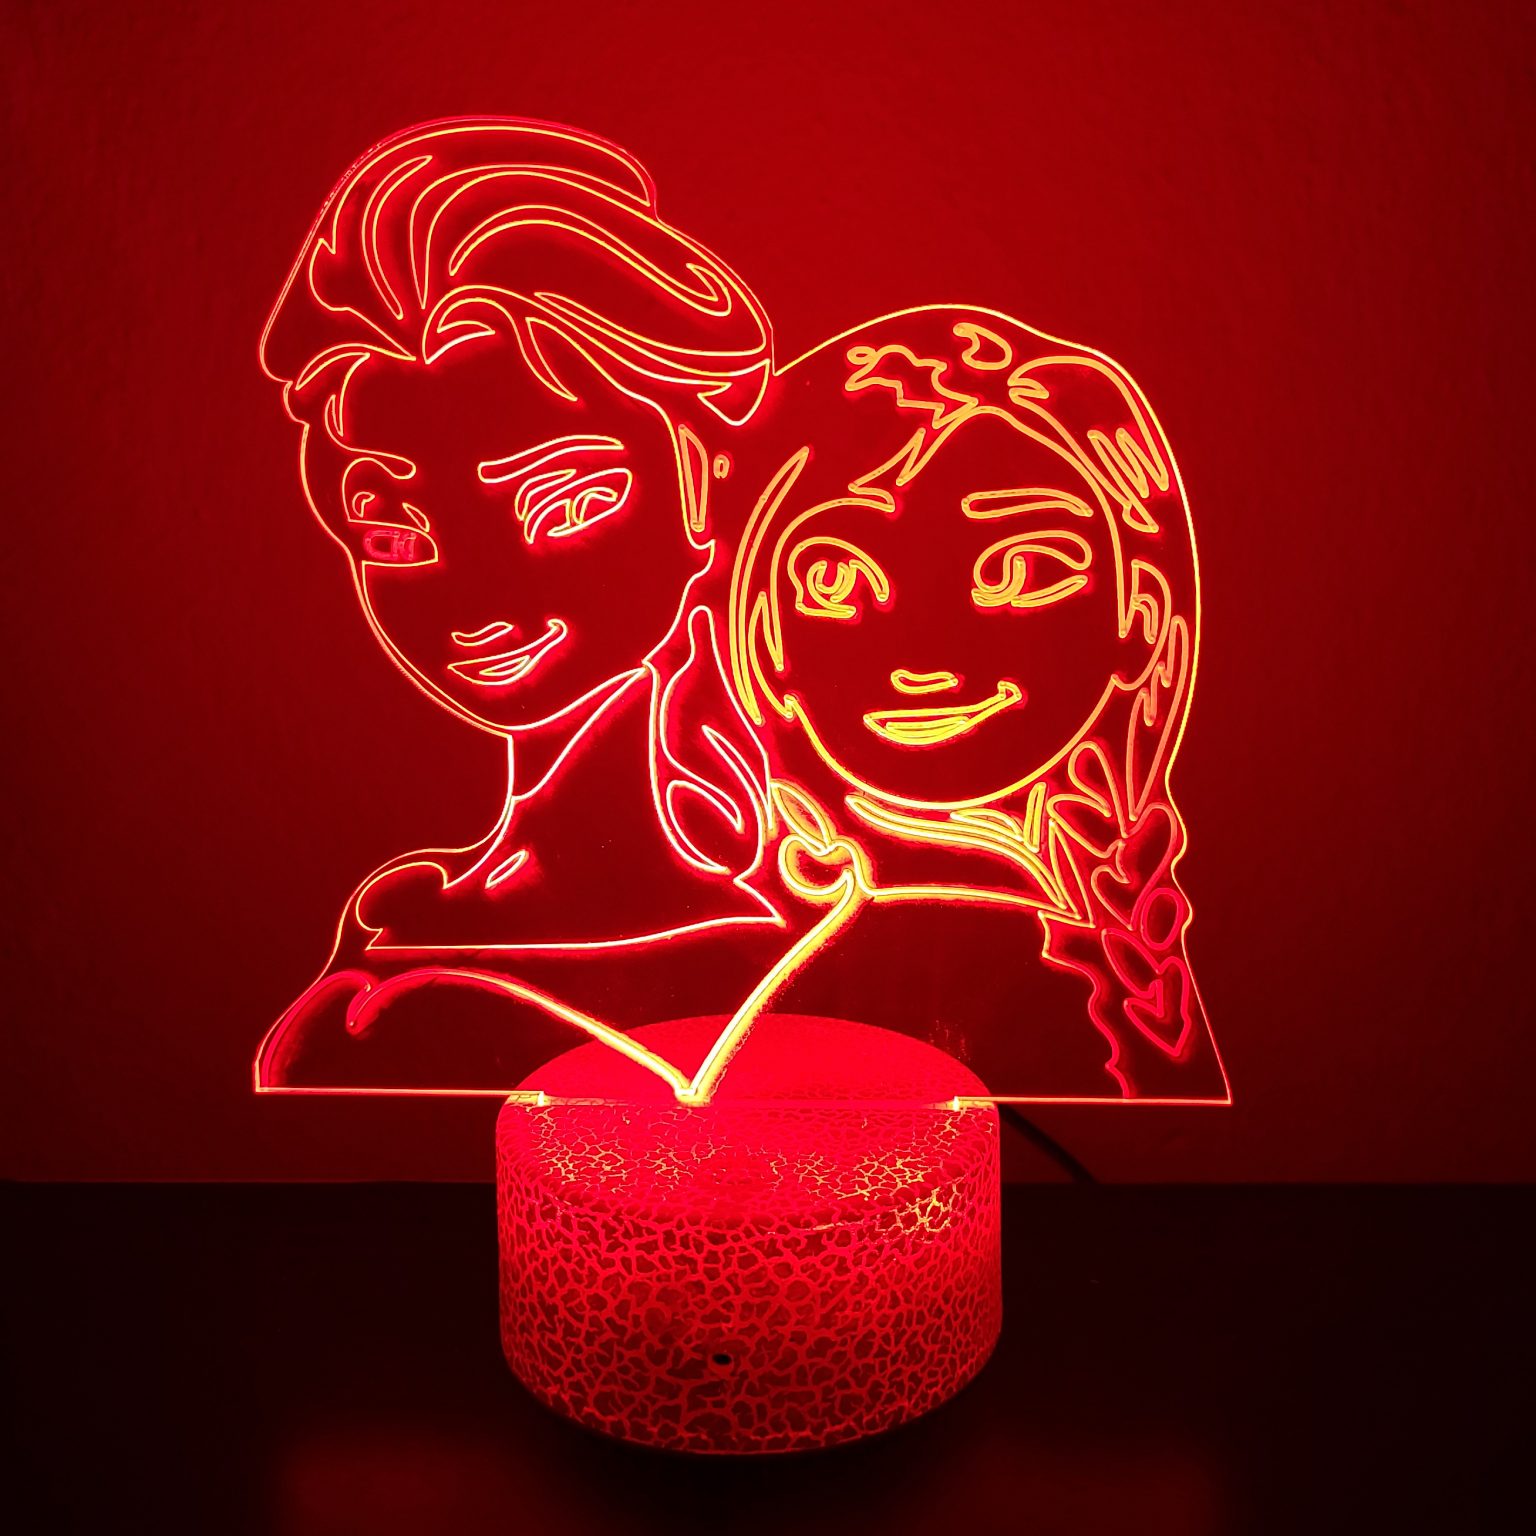 Φωτιστικό Plexiglass LED RGB Frozen Elsa & Anna